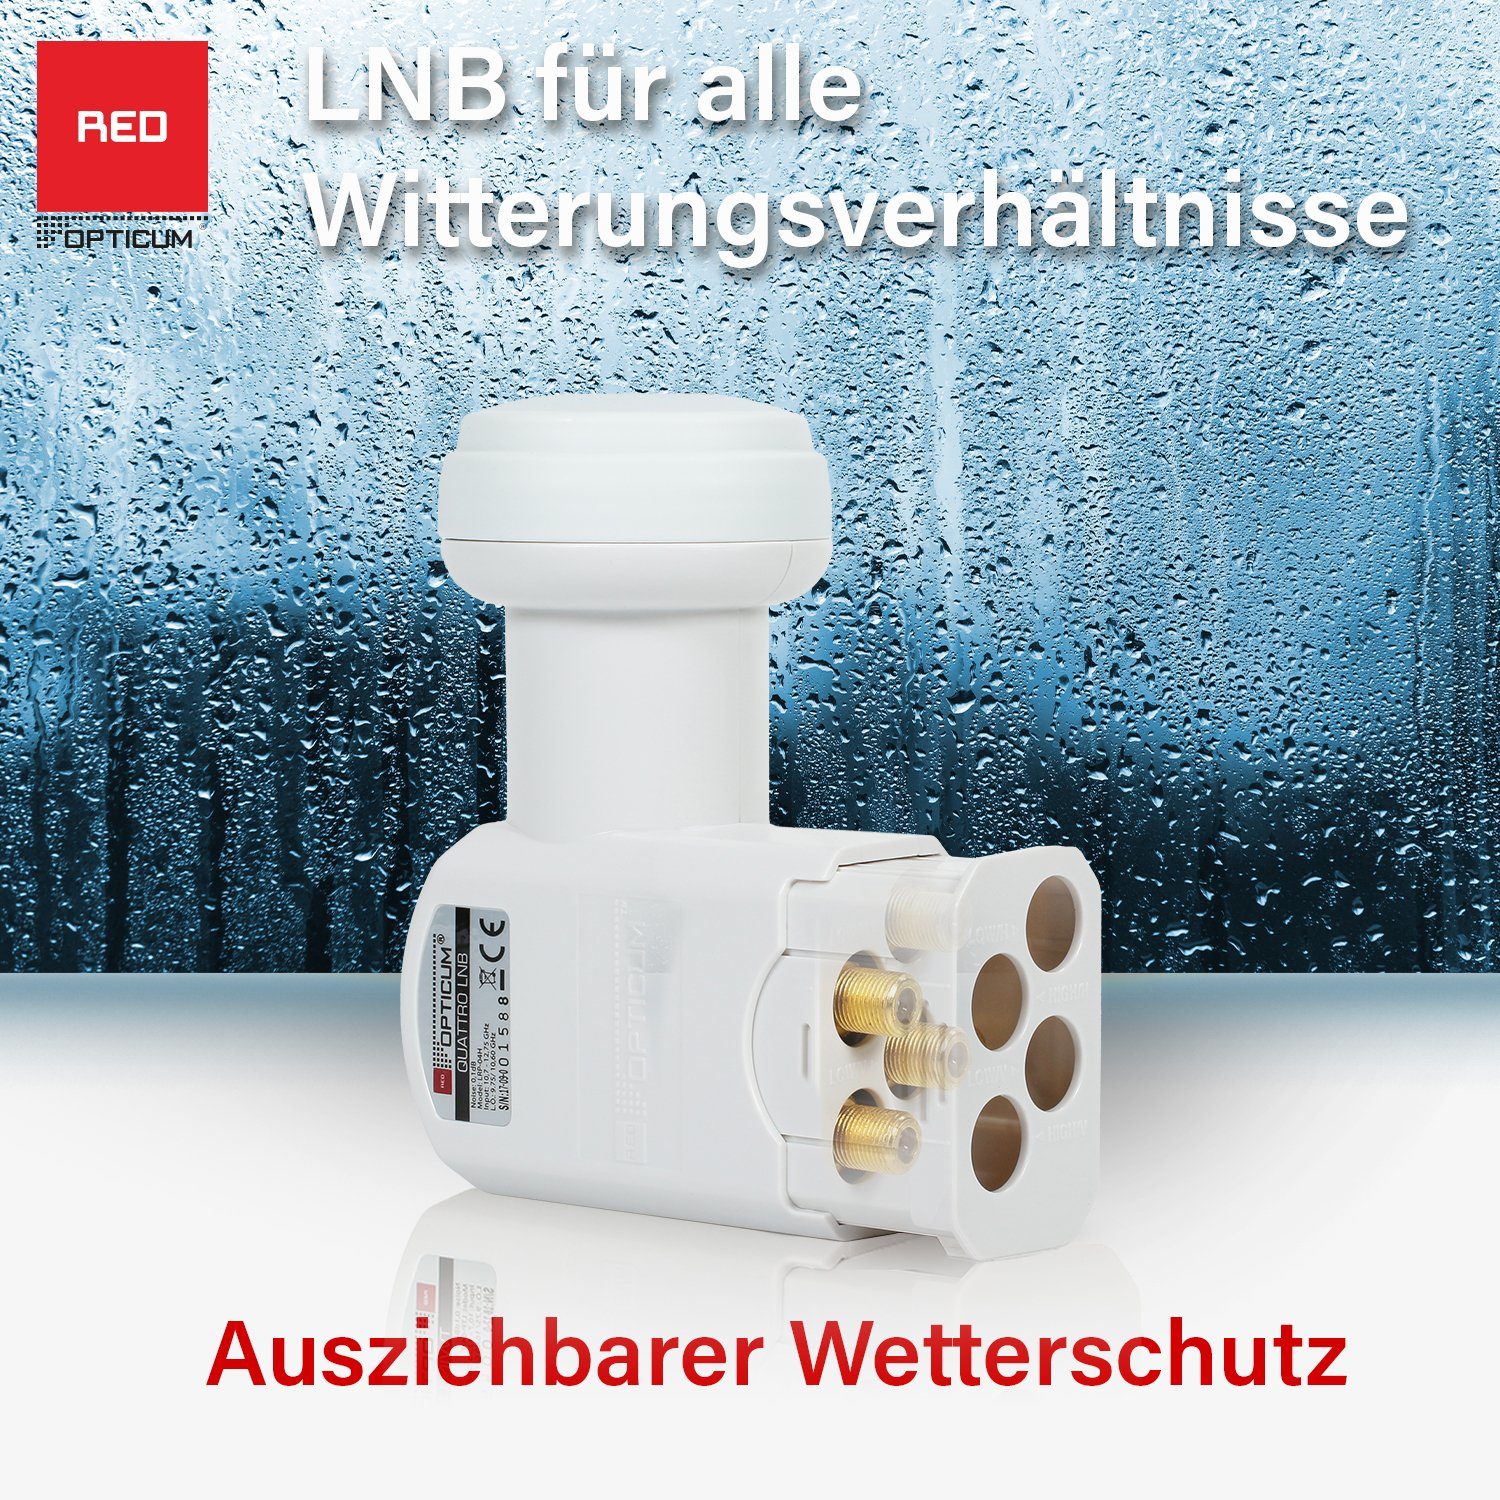 LNB & Quattro (Hitze- Universal-Quattro-LNB LRP-04H - für Multischalter) kältebeständiger RED OPTICUM Digital-LNB